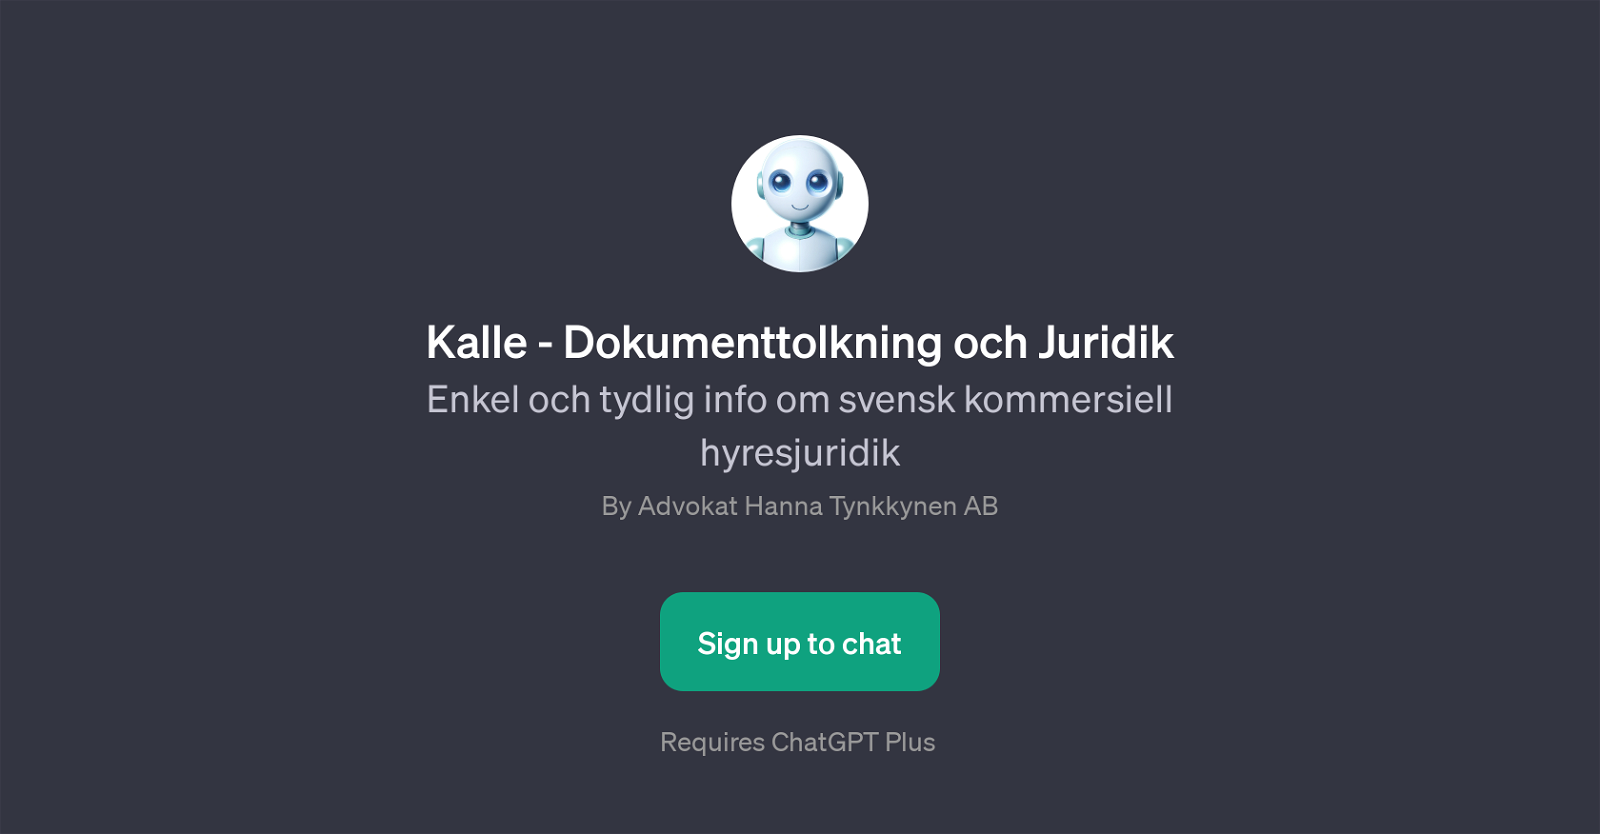 Kalle - Dokumenttolkning och Juridik website